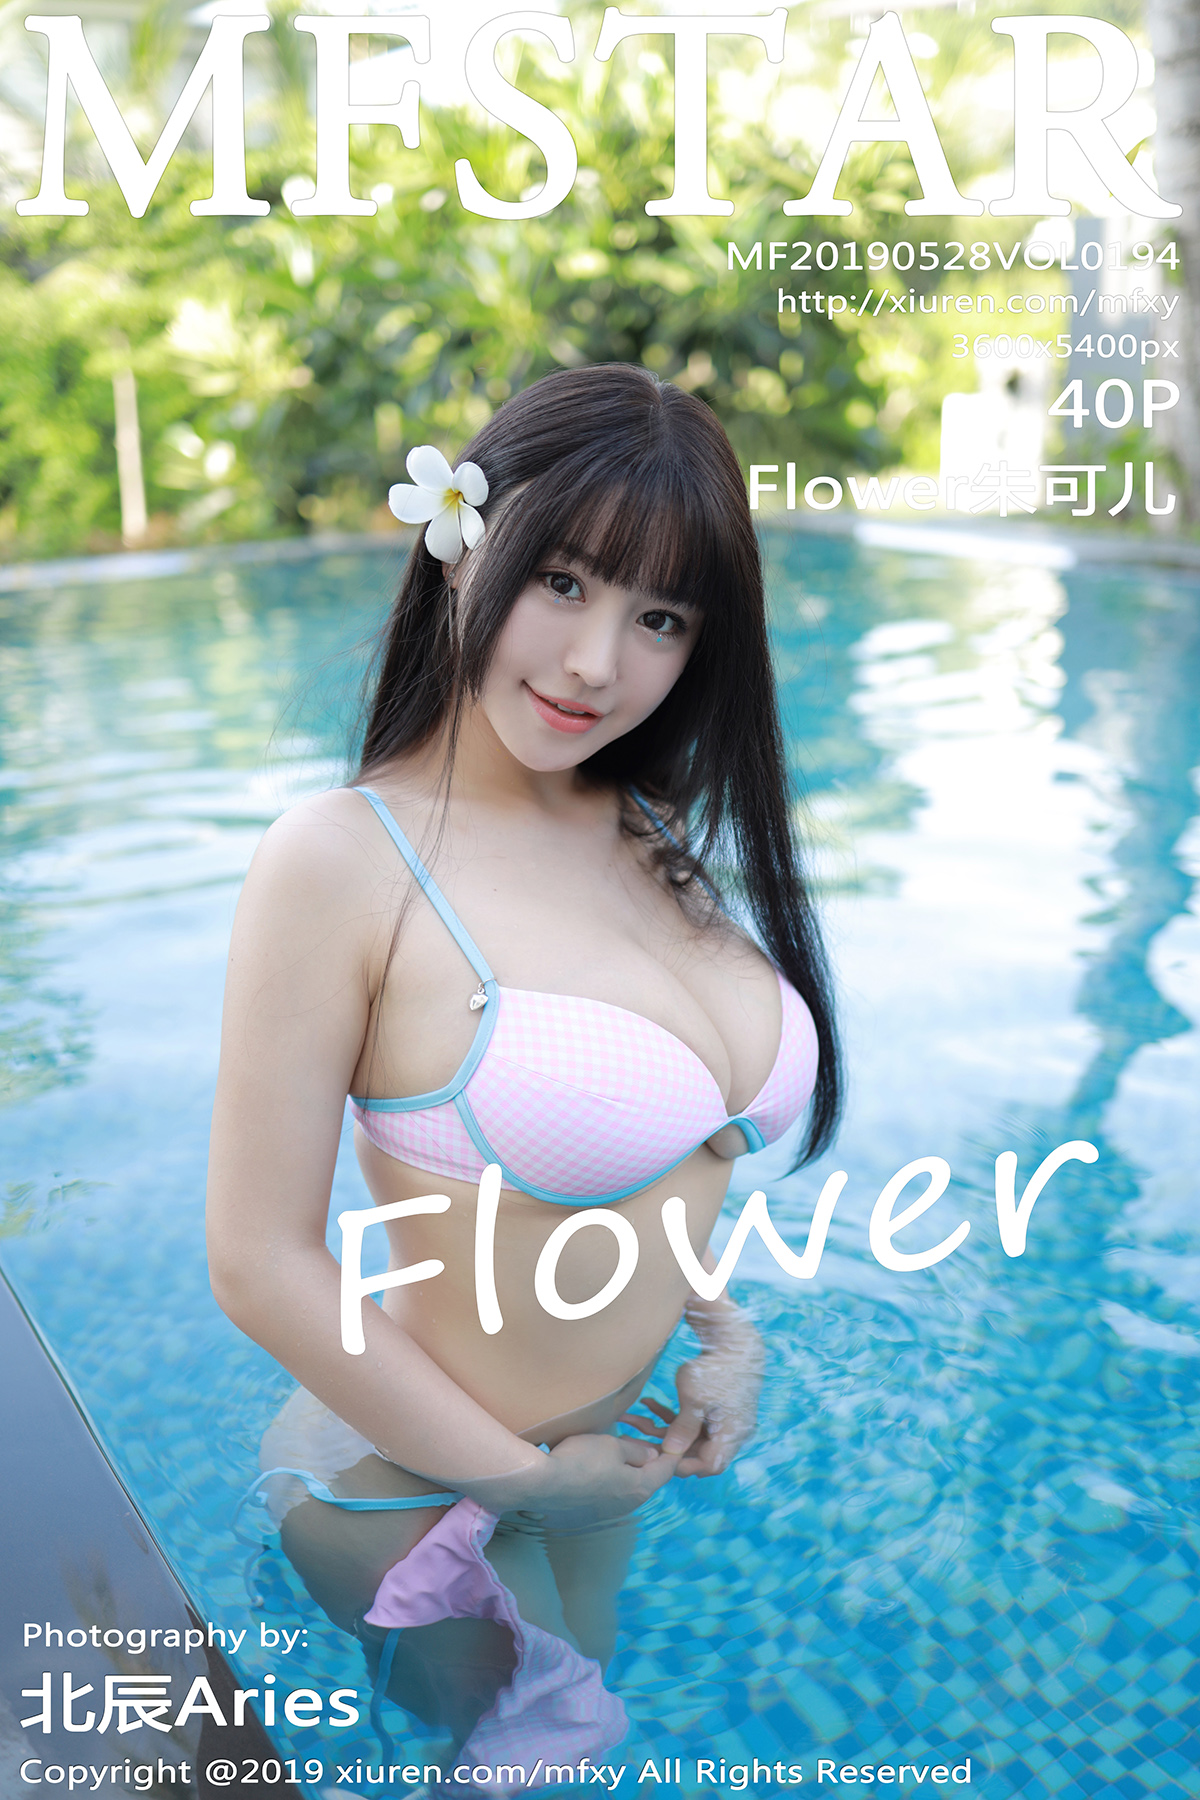 模范学院 [MFStar] 2019.05.28 VOL.194 Flower朱可儿